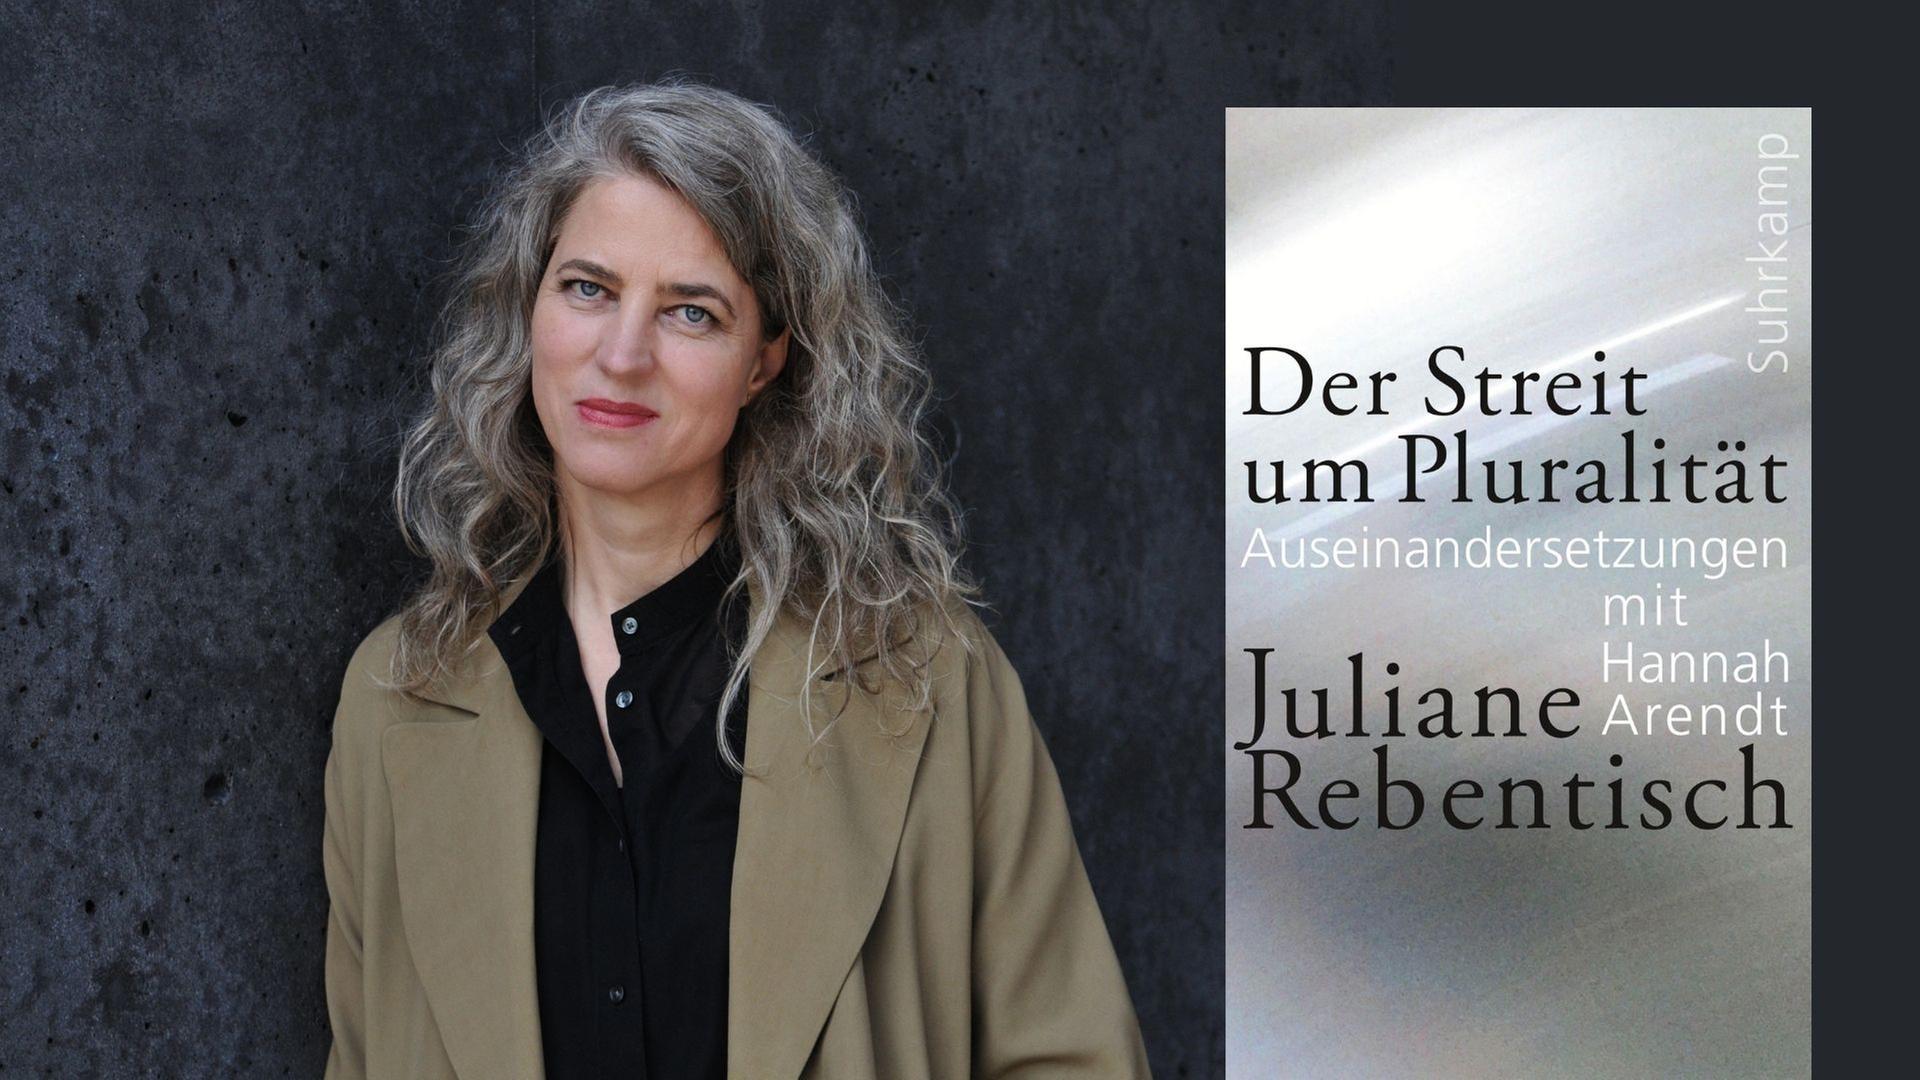 Juliane Rebentisch: "Der Streit um Pluralität"